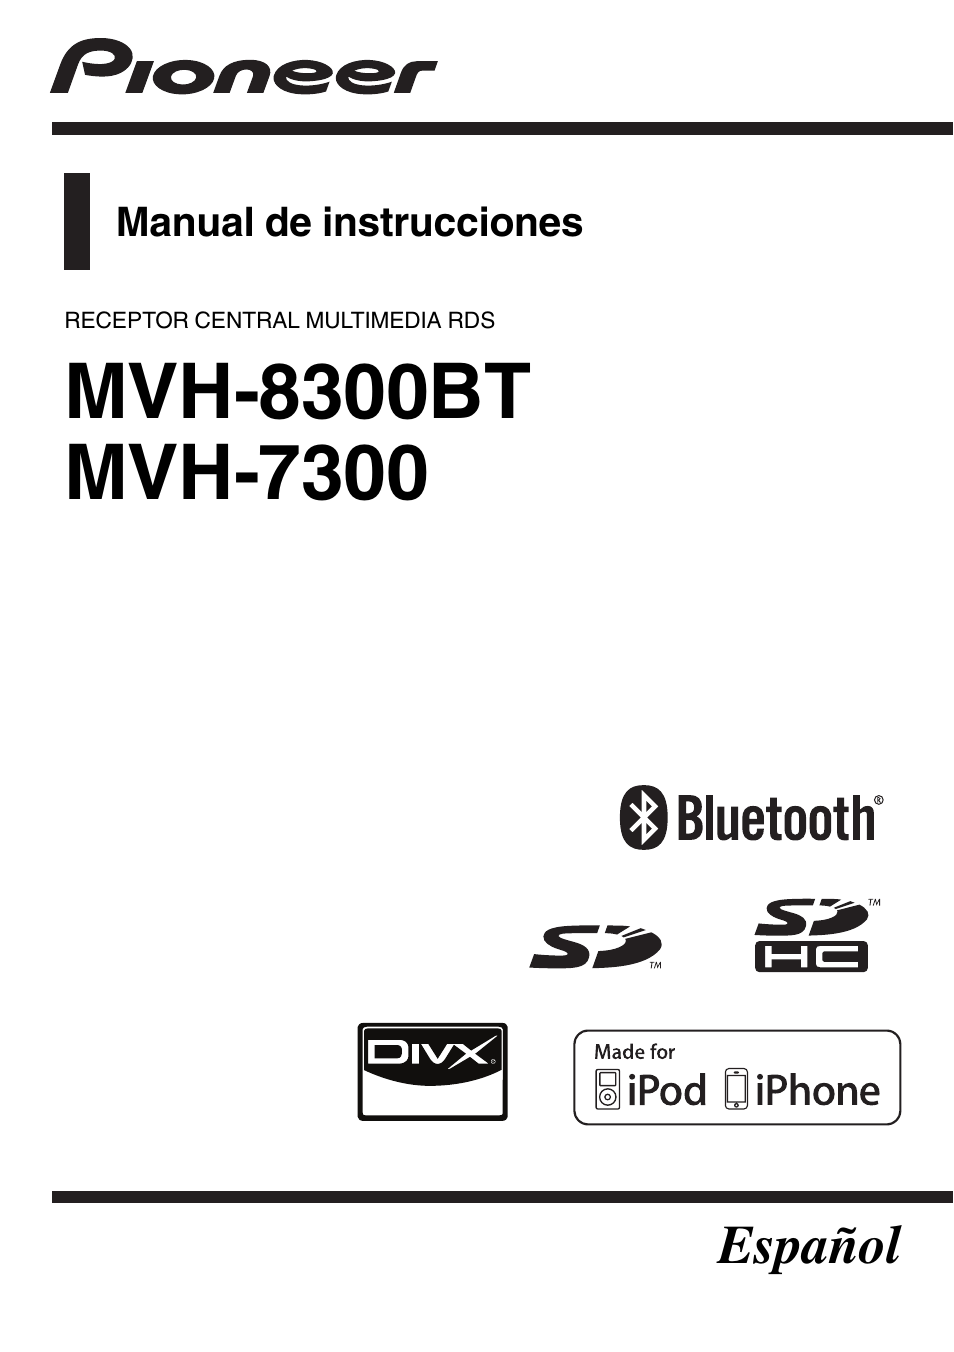 Pioneer MVH-7300 Manual del usuario | Páginas: 56